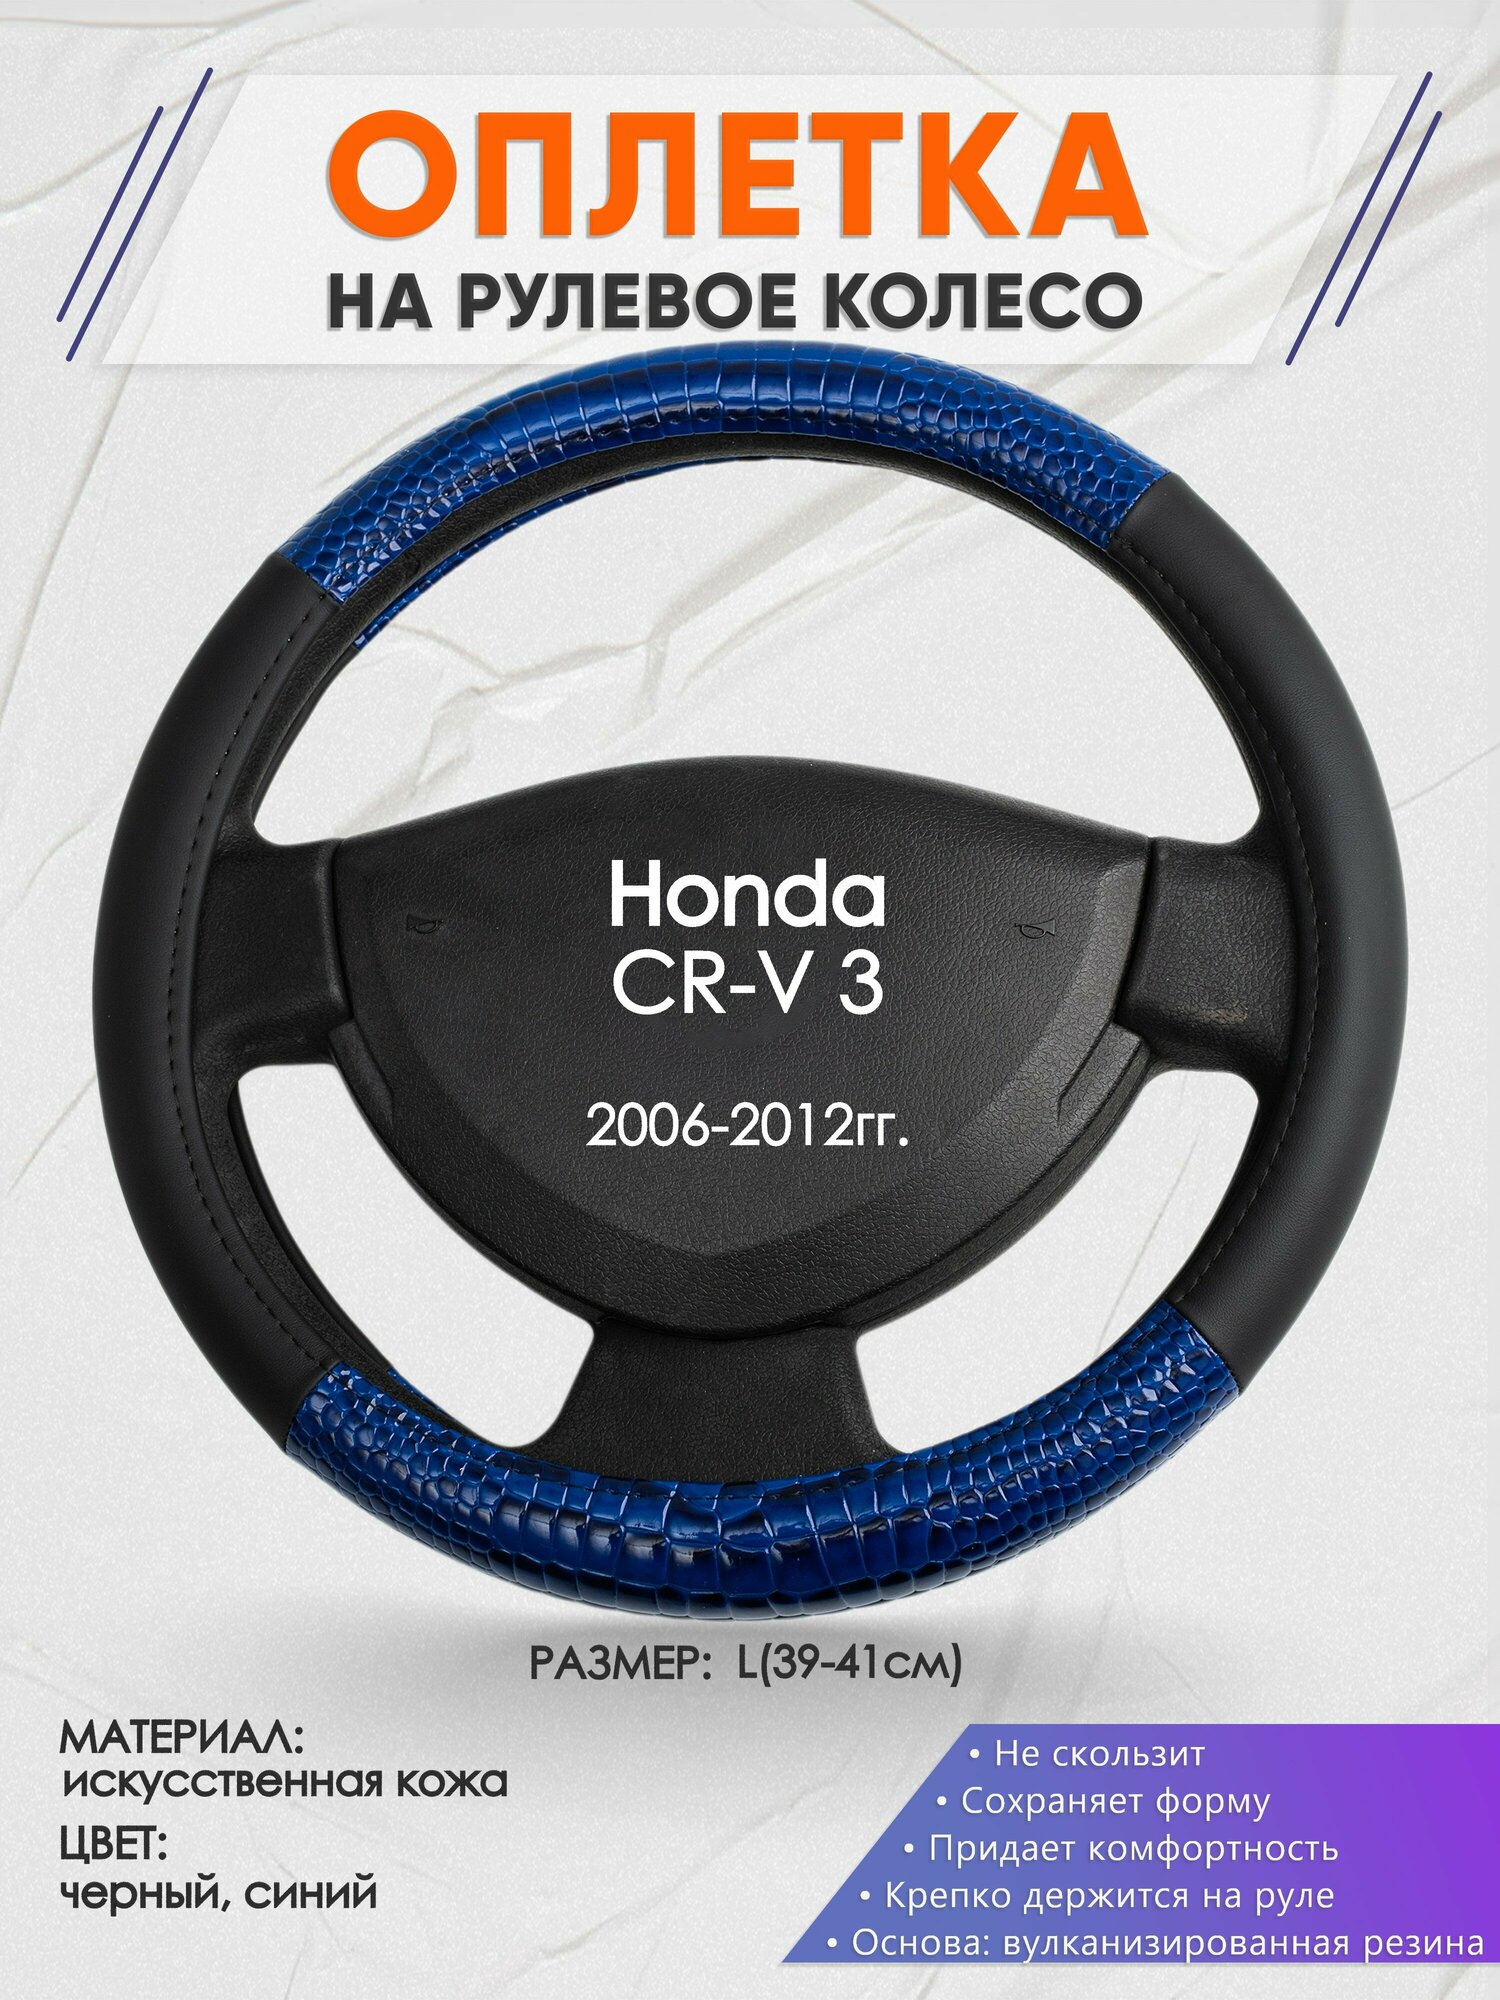 Оплетка на руль для Honda CR-V 3(Хонда срв 3) 2006-2012, L(39-41см), Искусственная кожа 82